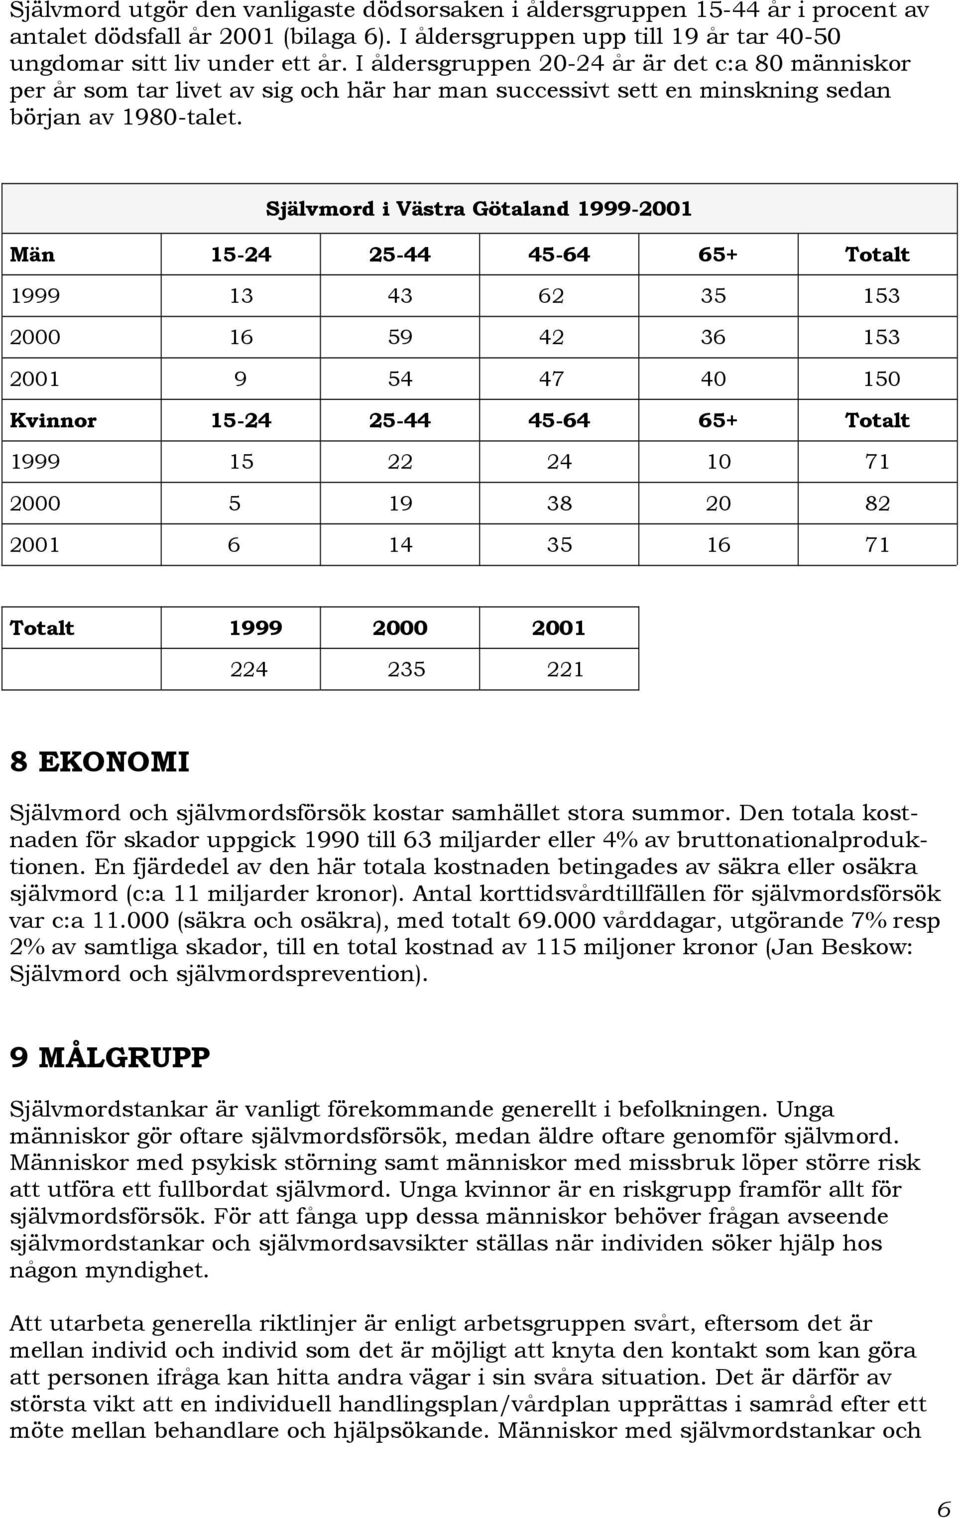 Självmord i Västra Götaland 1999-2001 Män 15-24 25-44 45-64 65+ Totalt 1999 13 43 62 35 153 2000 16 59 42 36 153 2001 9 54 47 40 150 Kvinnor 15-24 25-44 45-64 65+ Totalt 1999 15 22 24 10 71 2000 5 19